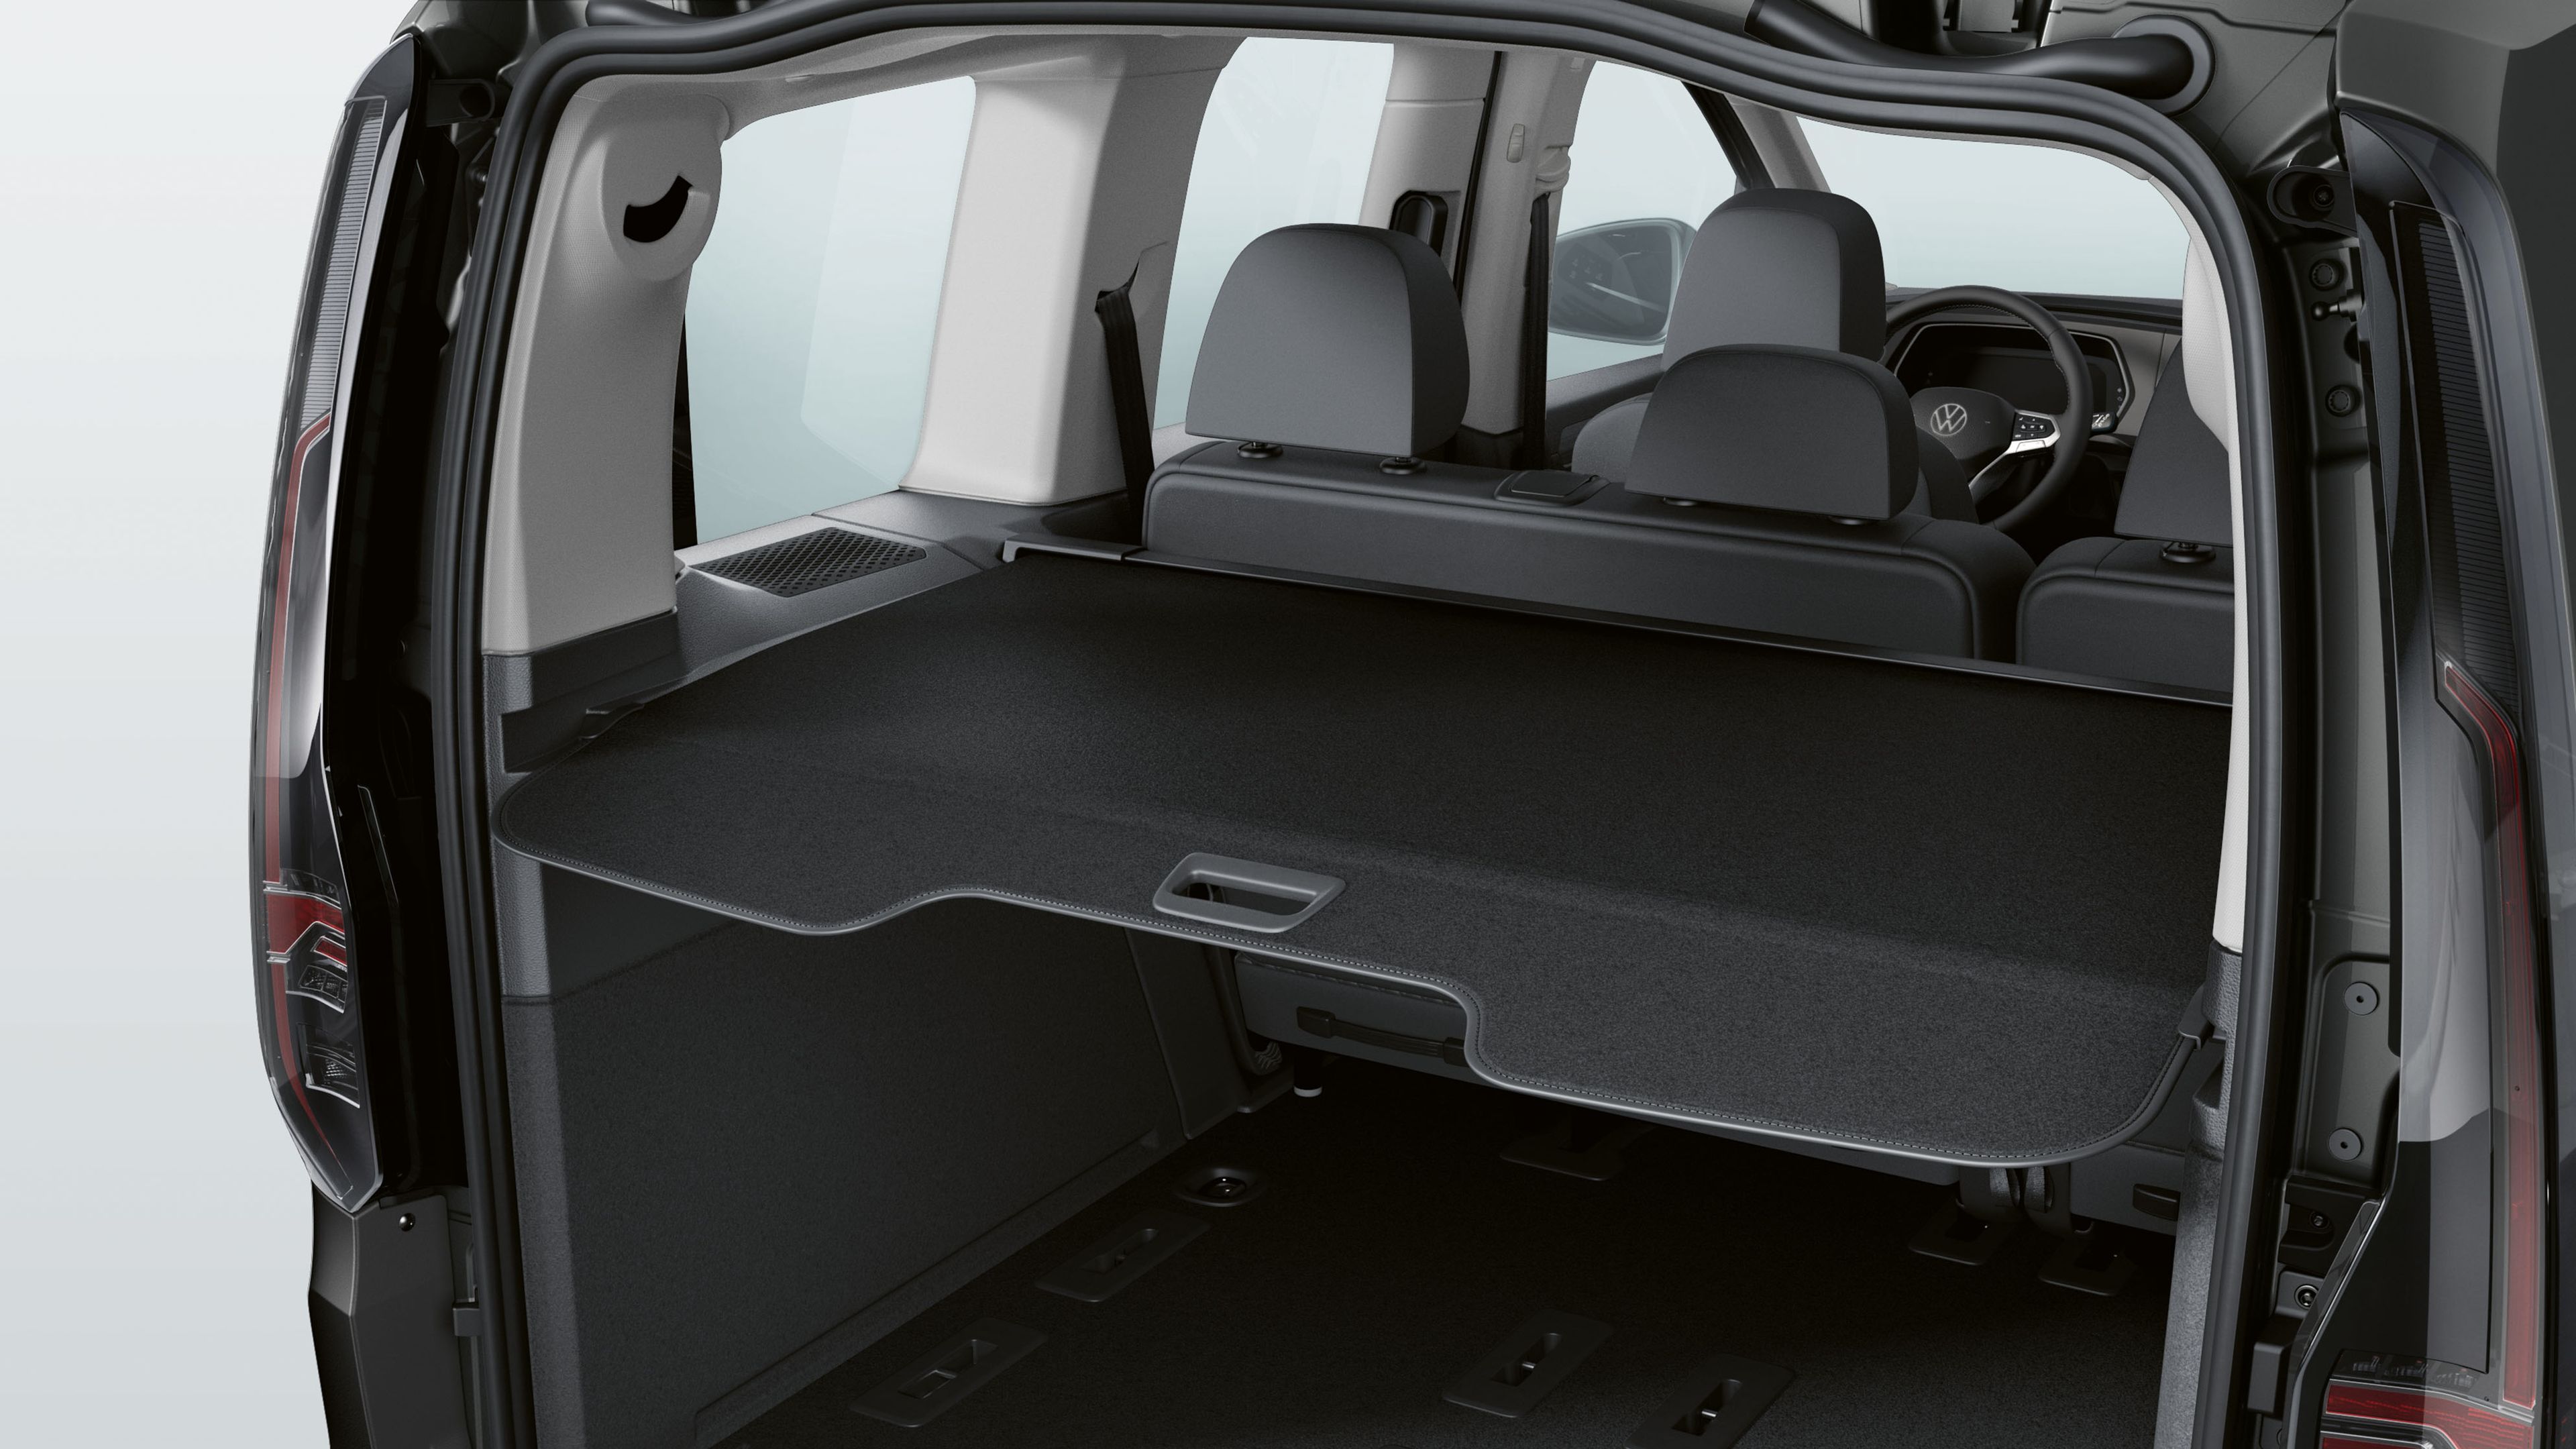 Der geöffnete Kofferraum eines VW Caddy mit Gepäckraumabdeckung.